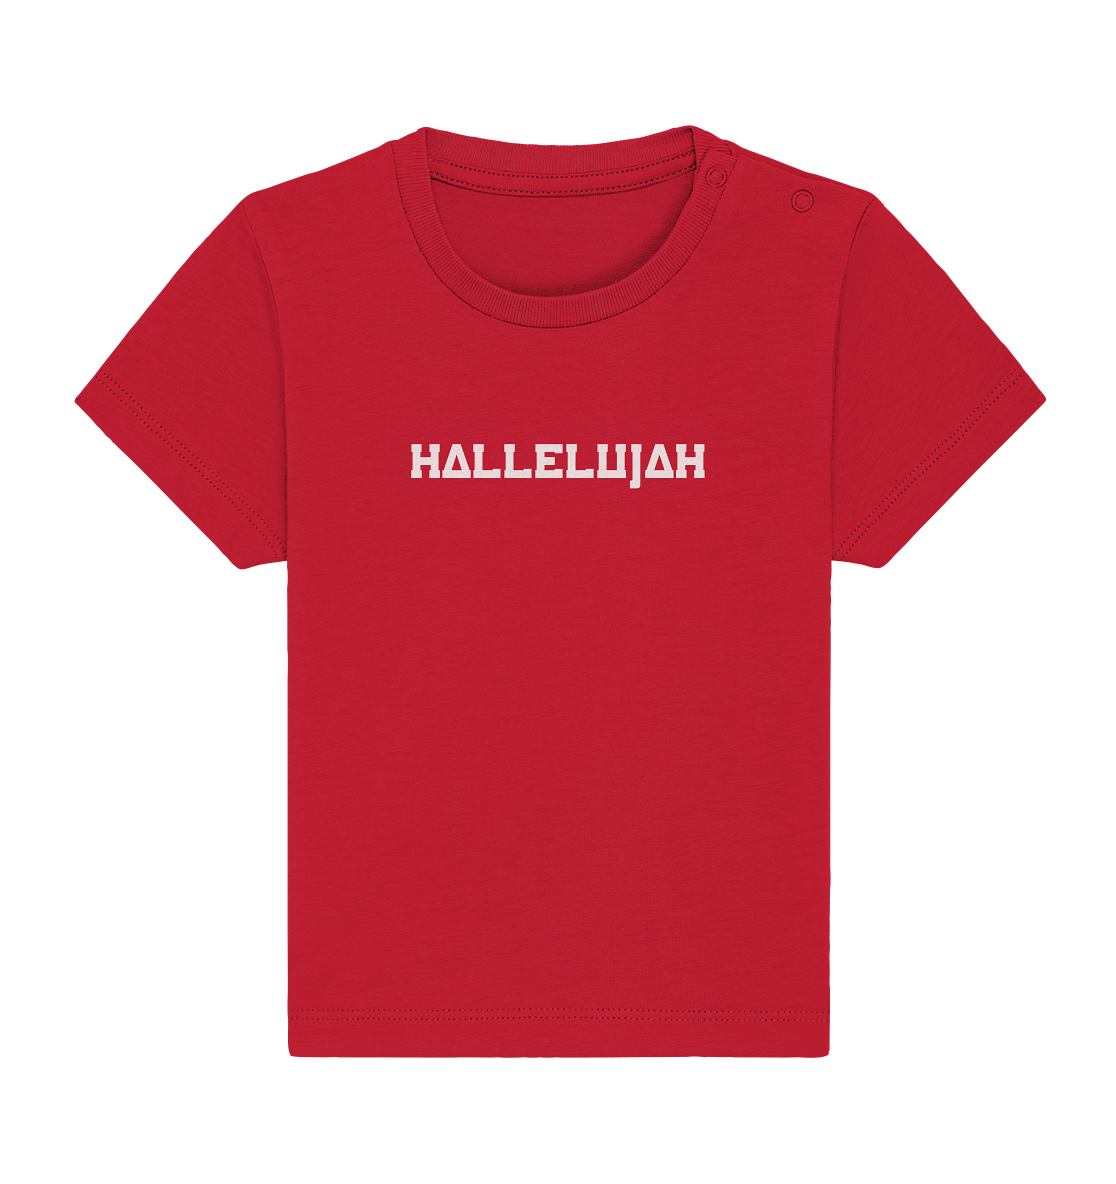 Hallelujah - Baby Organic Shirt